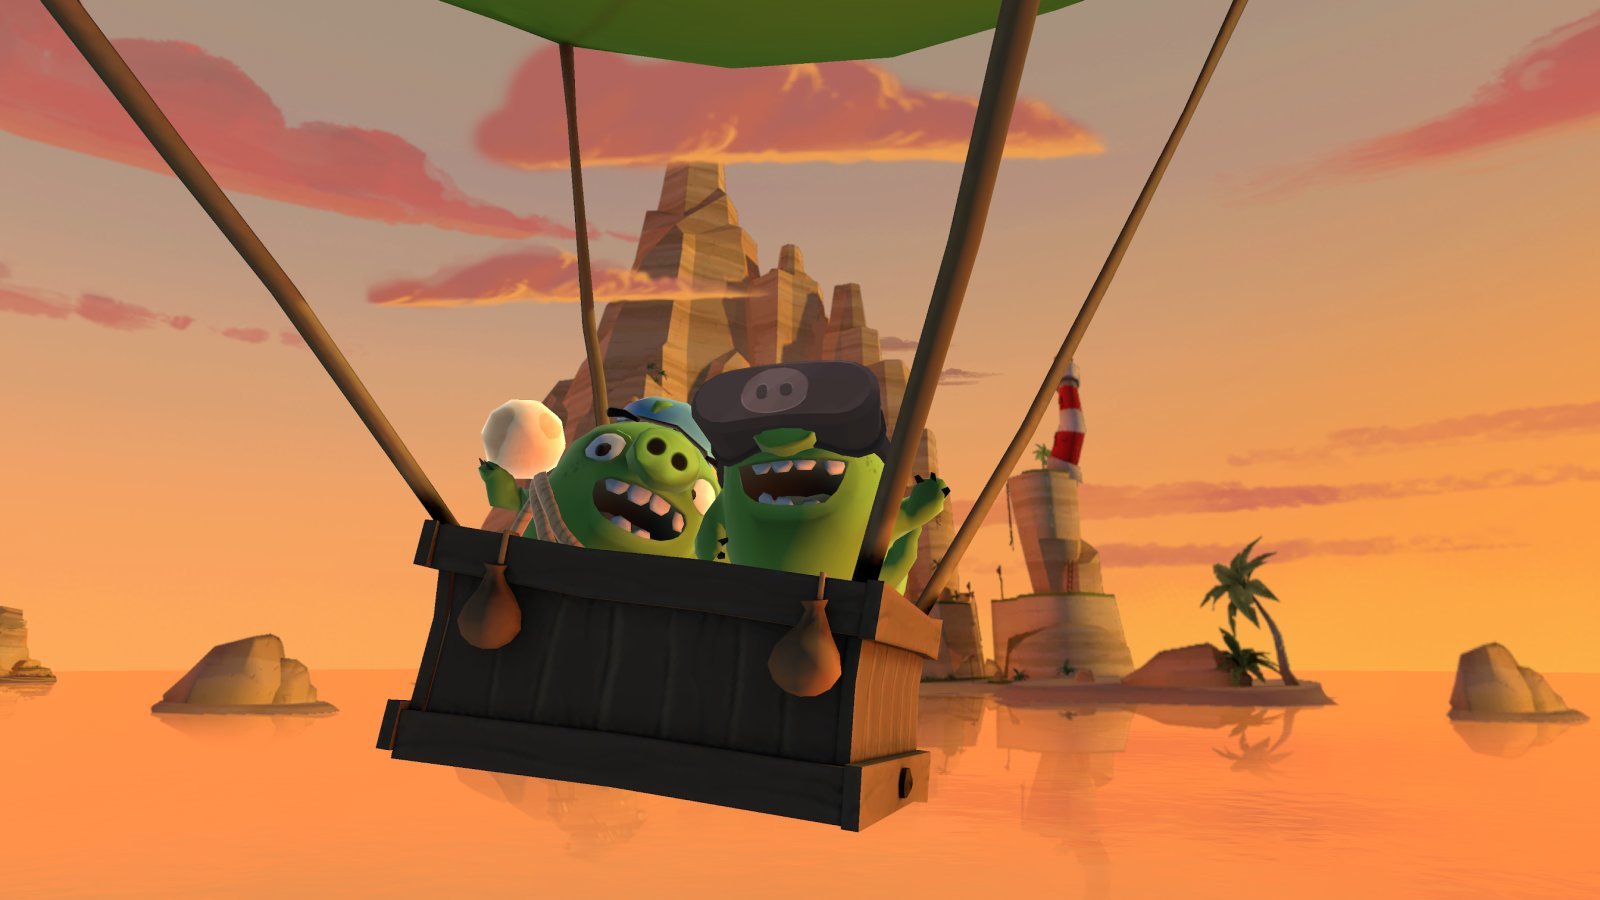 สาวก Angry Birds มีเฮ! ‘Angry Birds: Isle of Pigs’ เตรียมตัวขึ้นฝั่งแล้วใน PlayStation VR 